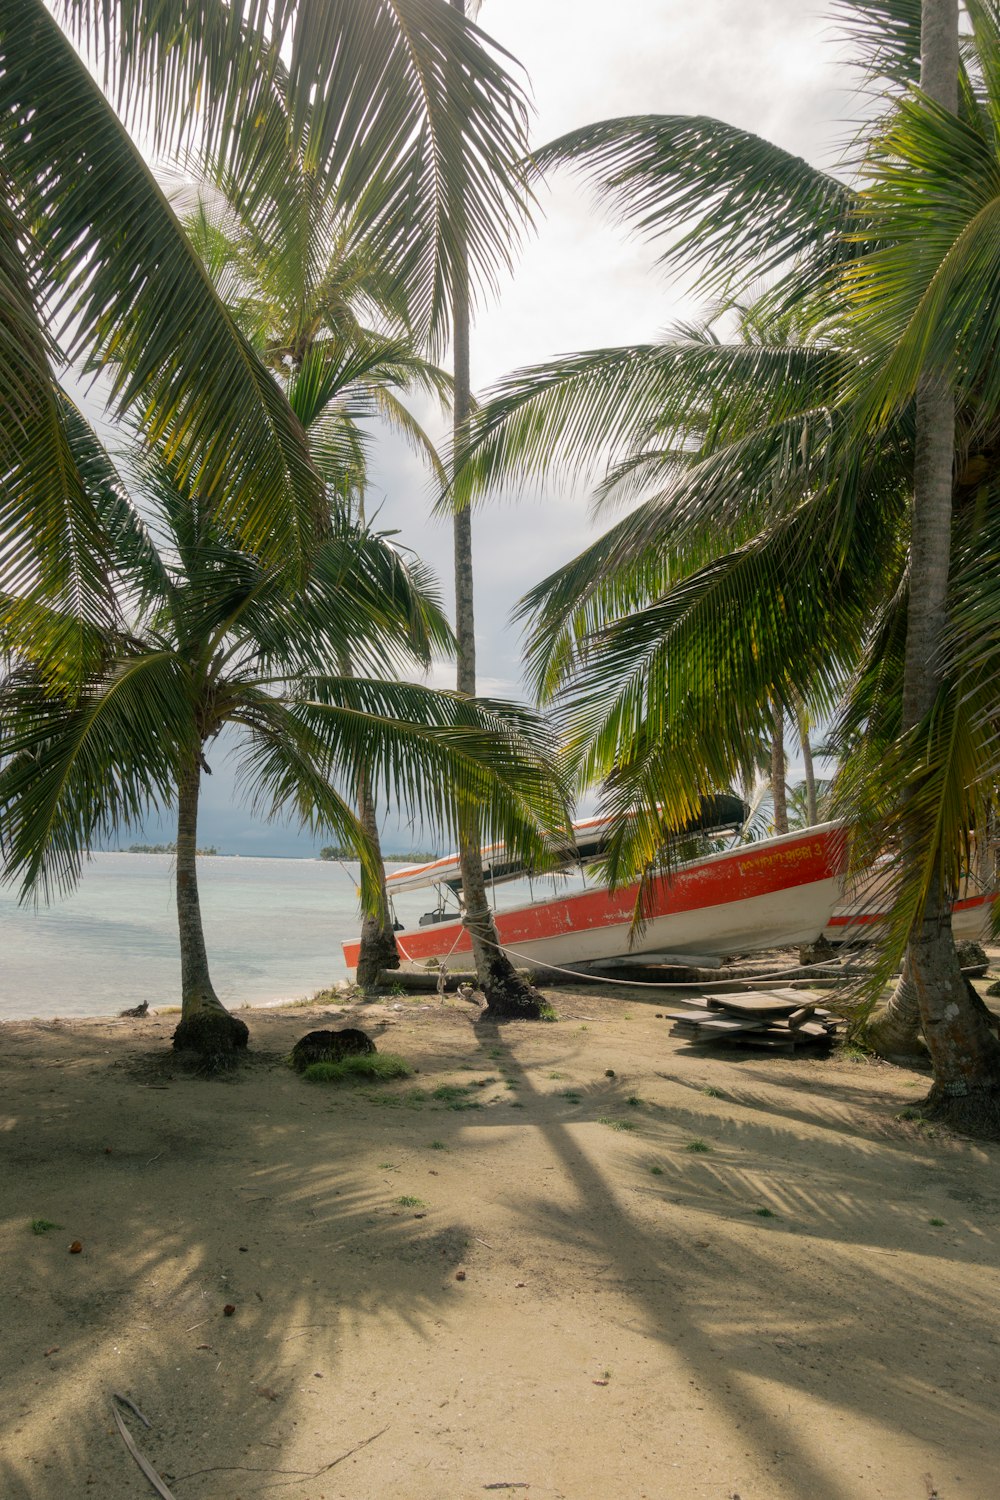 Un barco rojo y blanco sentado en lo alto de una playa junto a palmeras